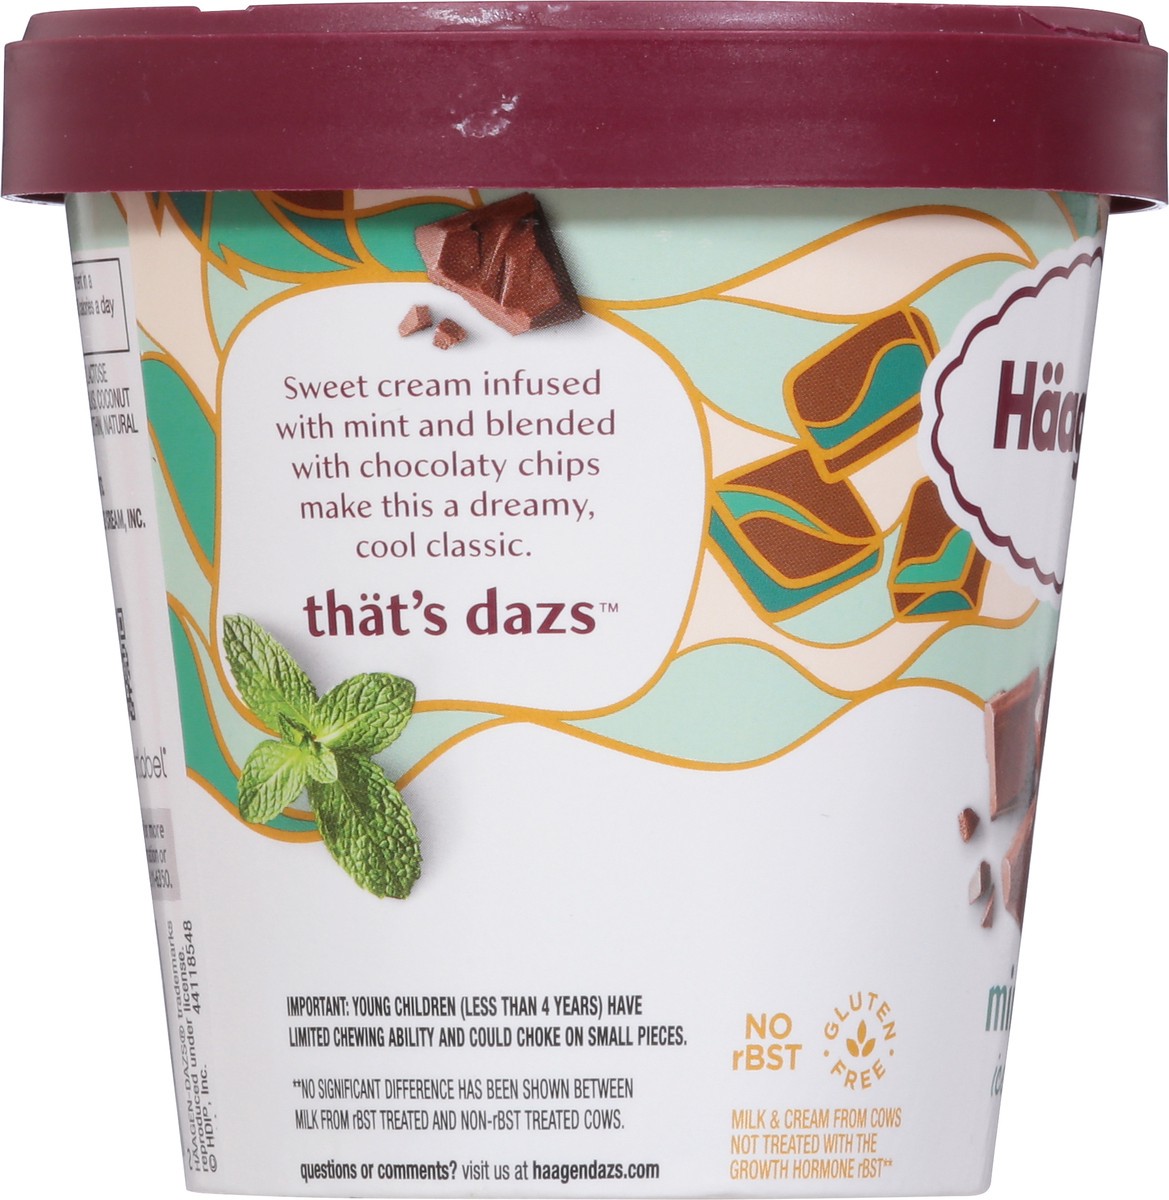 slide 7 of 9, Häagen-Dazs Ice Cream, 14 fl oz